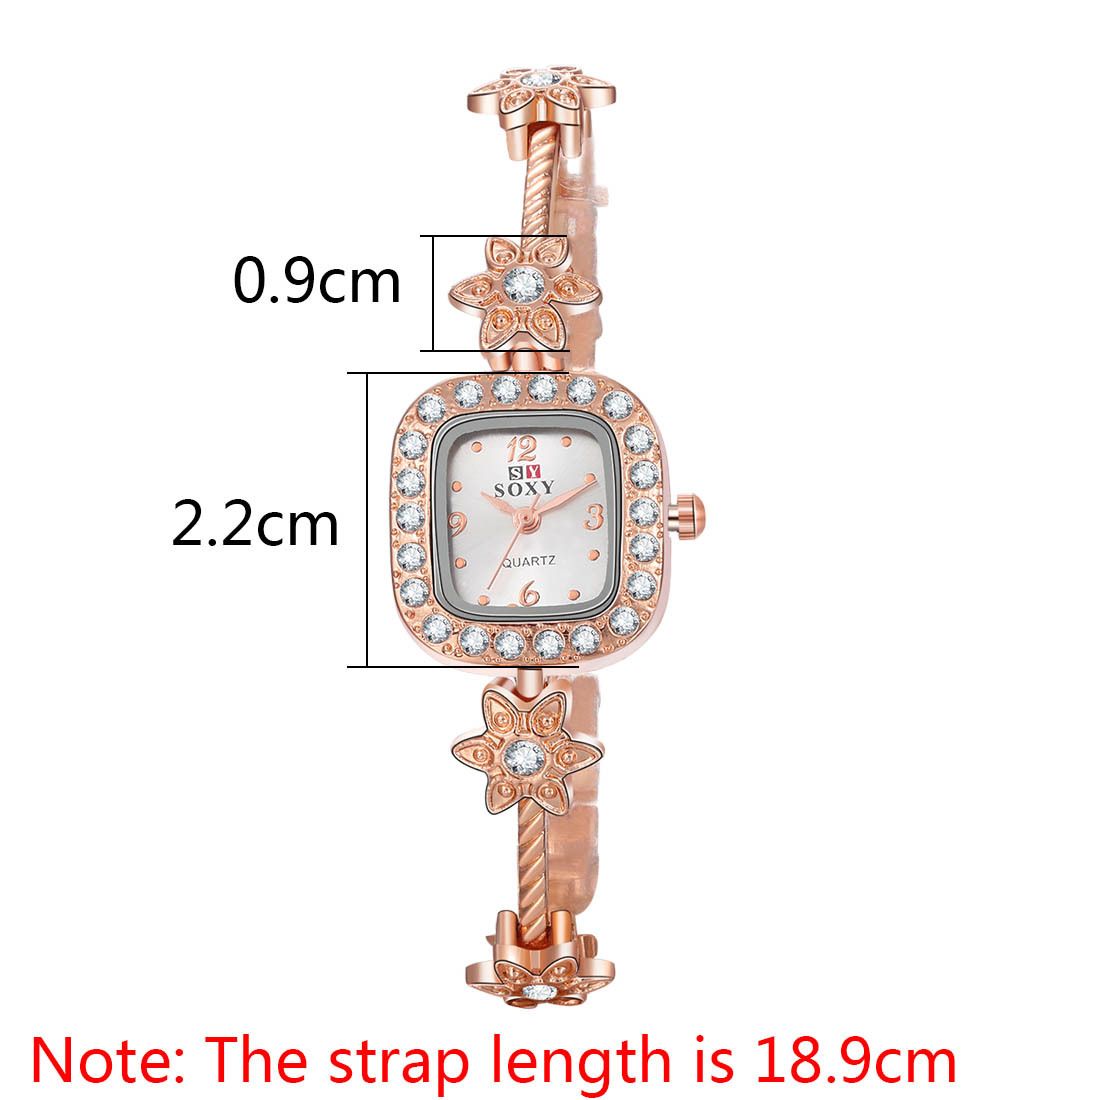 좋은 새로운 스타일 여성 손목 시계 뜨거운 pentacle 팔찌 시계 합금 시계 학생 여성 모델 2 피스 / 많은 시계